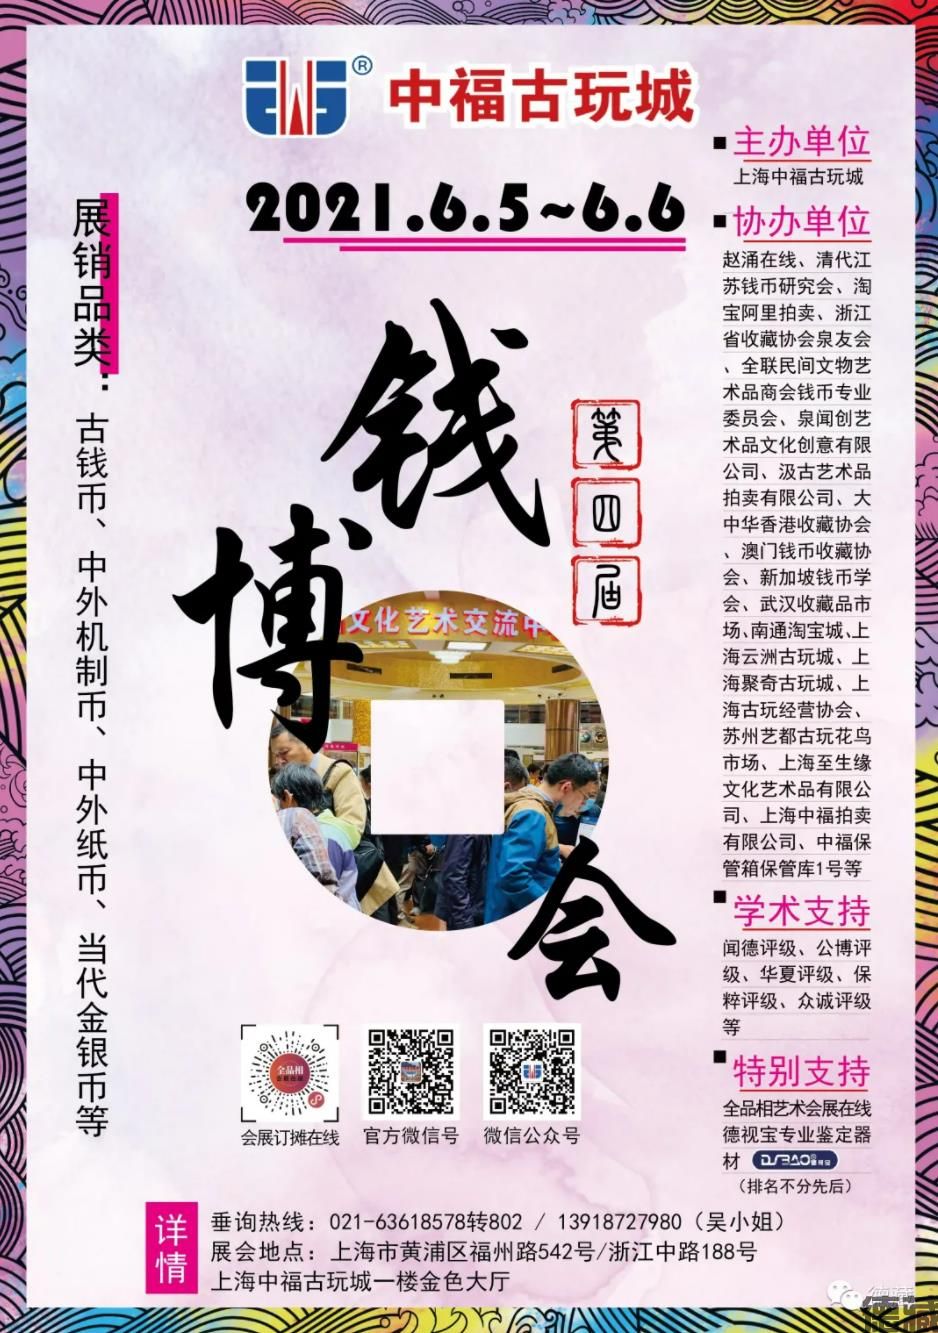 德藏将参展2021年6月5-6日上海中福全国钱币博览会(图1)